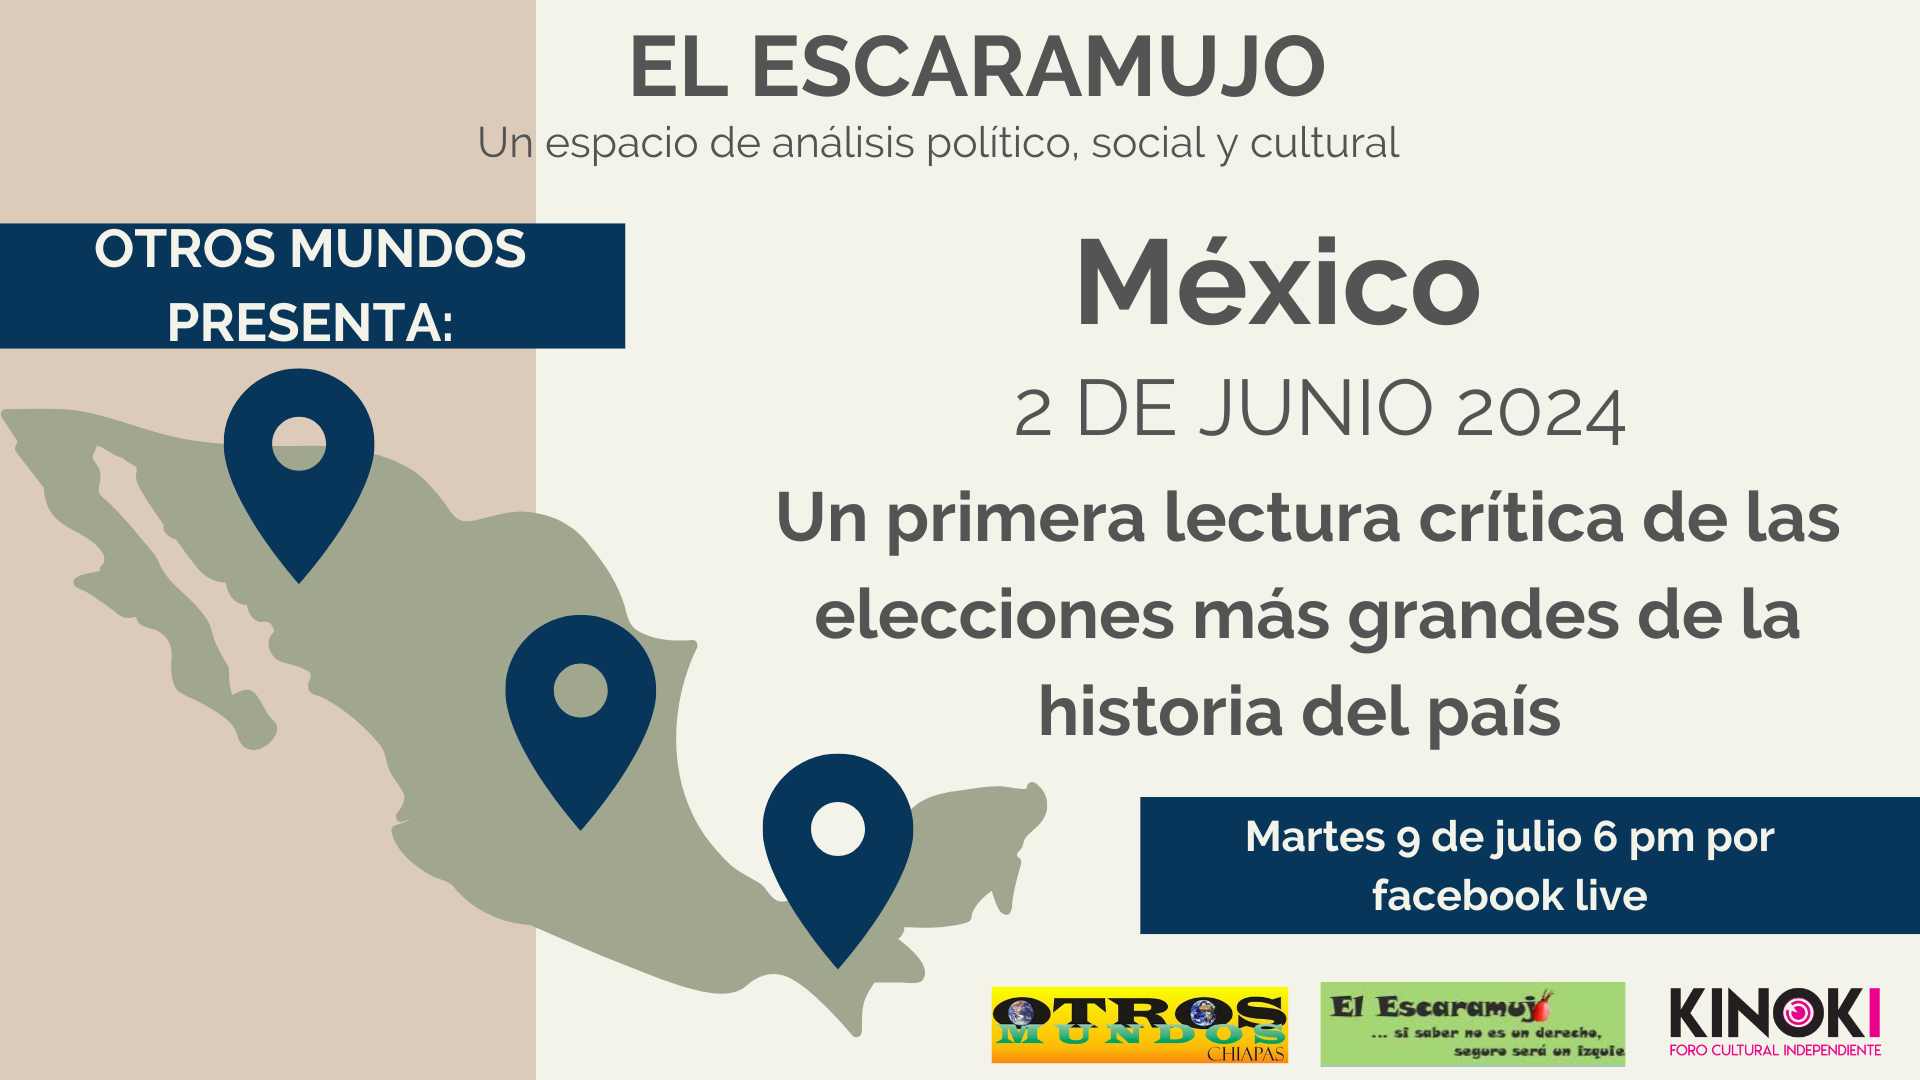 El Escaramujo en la Radio martes 22 de marzo 6:00 pm: México 2 de junio 2024: Una primera lectura crítica de las elecciones más grandes en la historia del país